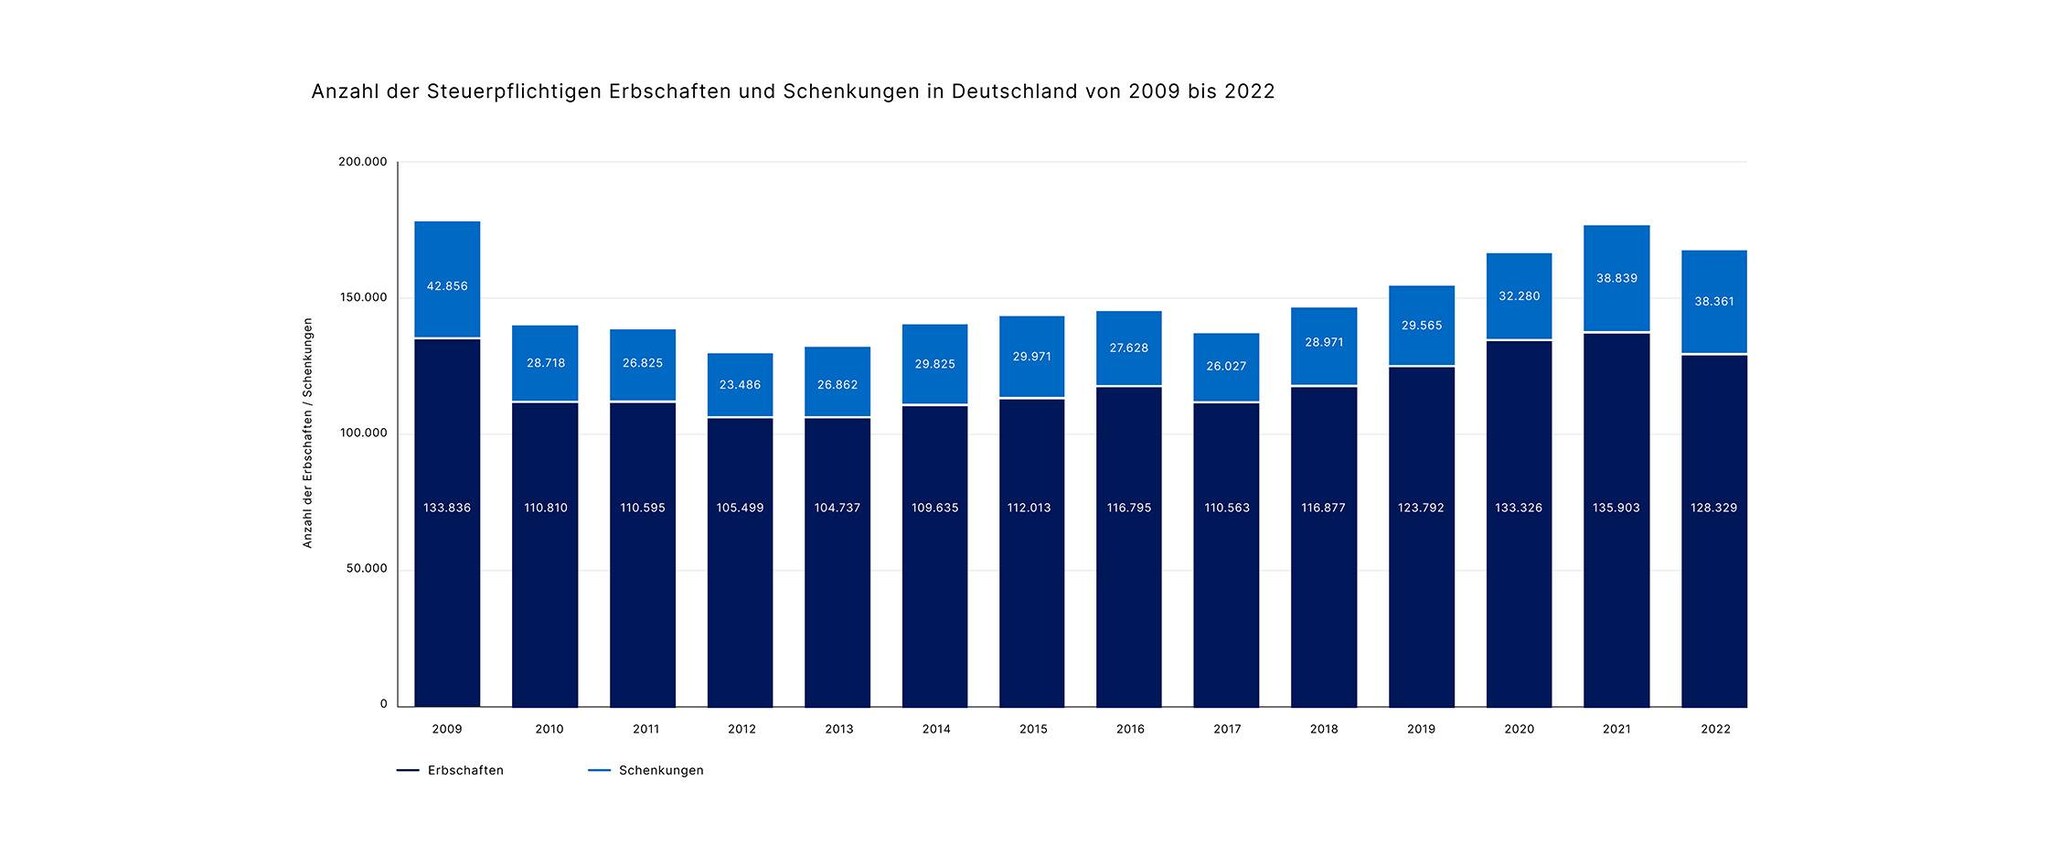 10068 Anzahl der Steuerpflichtigen Erbschaften und Schenkungen in Deutschland von 2009 bis 2022_936x2240